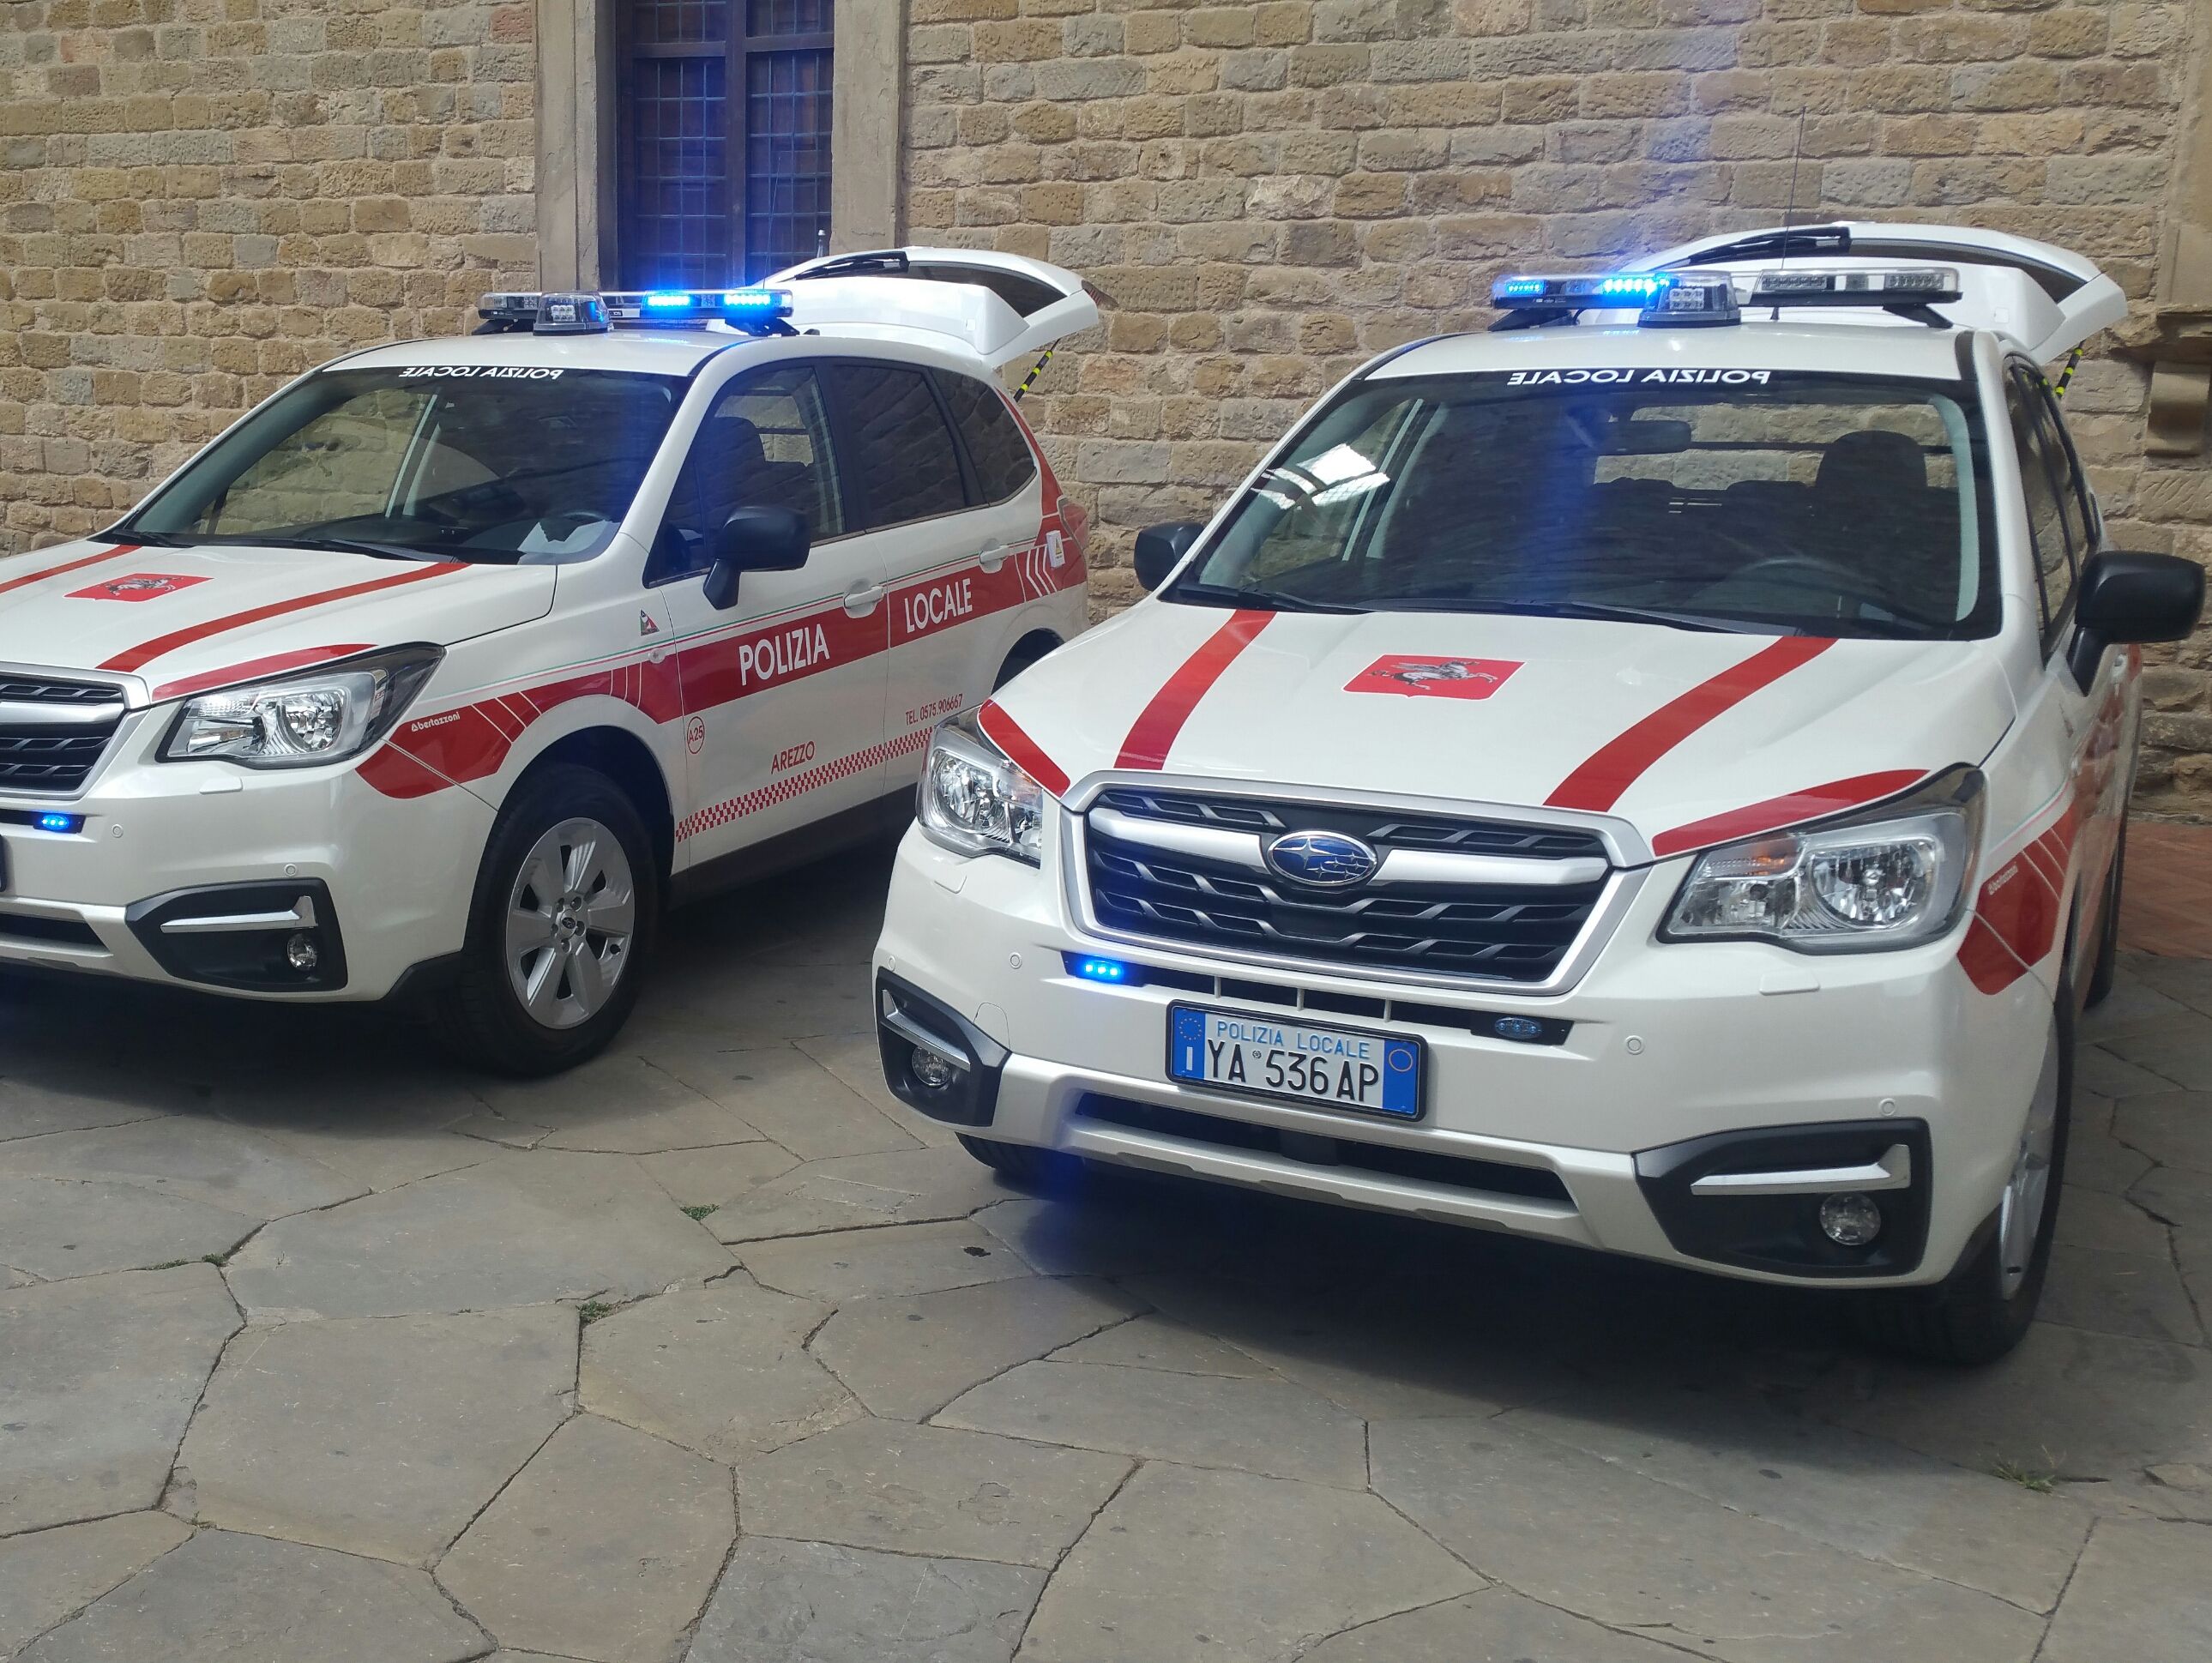 La polizia municipale festeggia San Sebastiano: il bilancio di un anno difficile. La nuova carta dei servizi